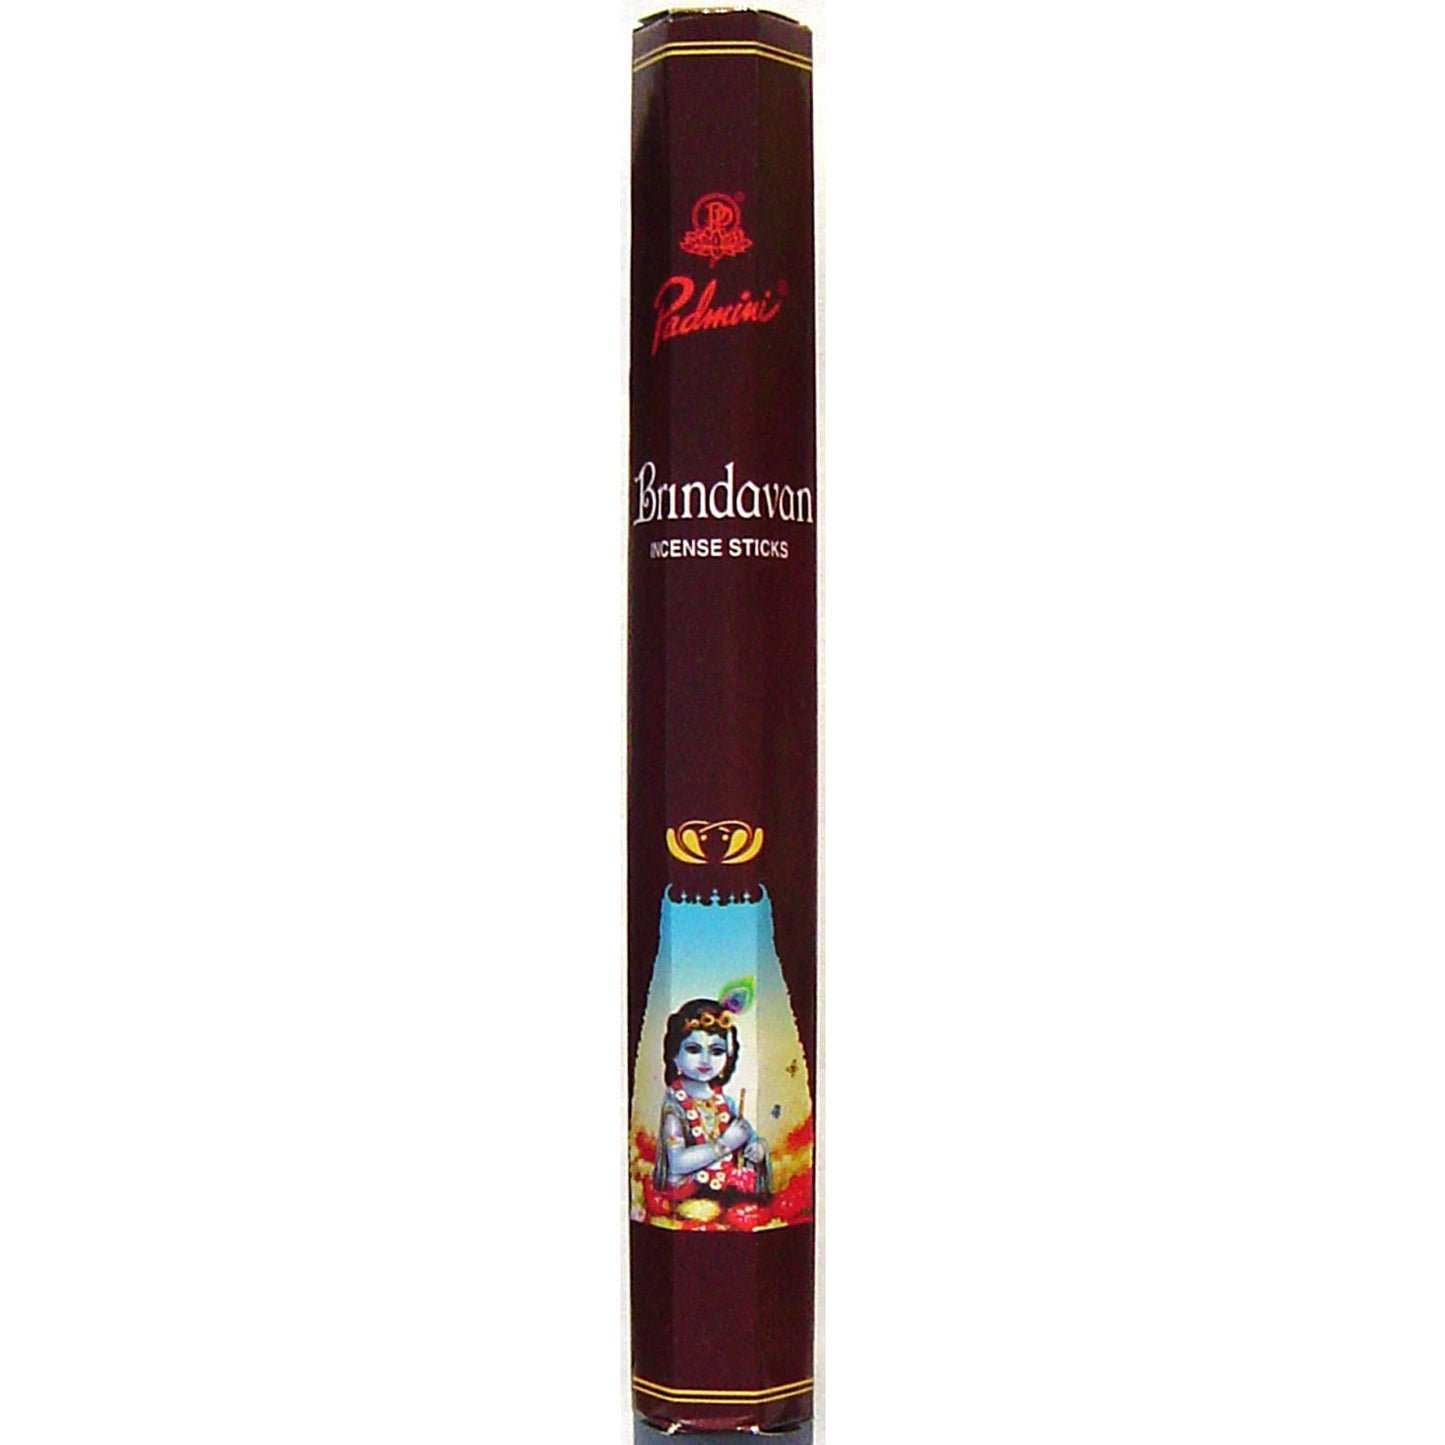 Padmini - Incense Sticks, Brindavan Sandal